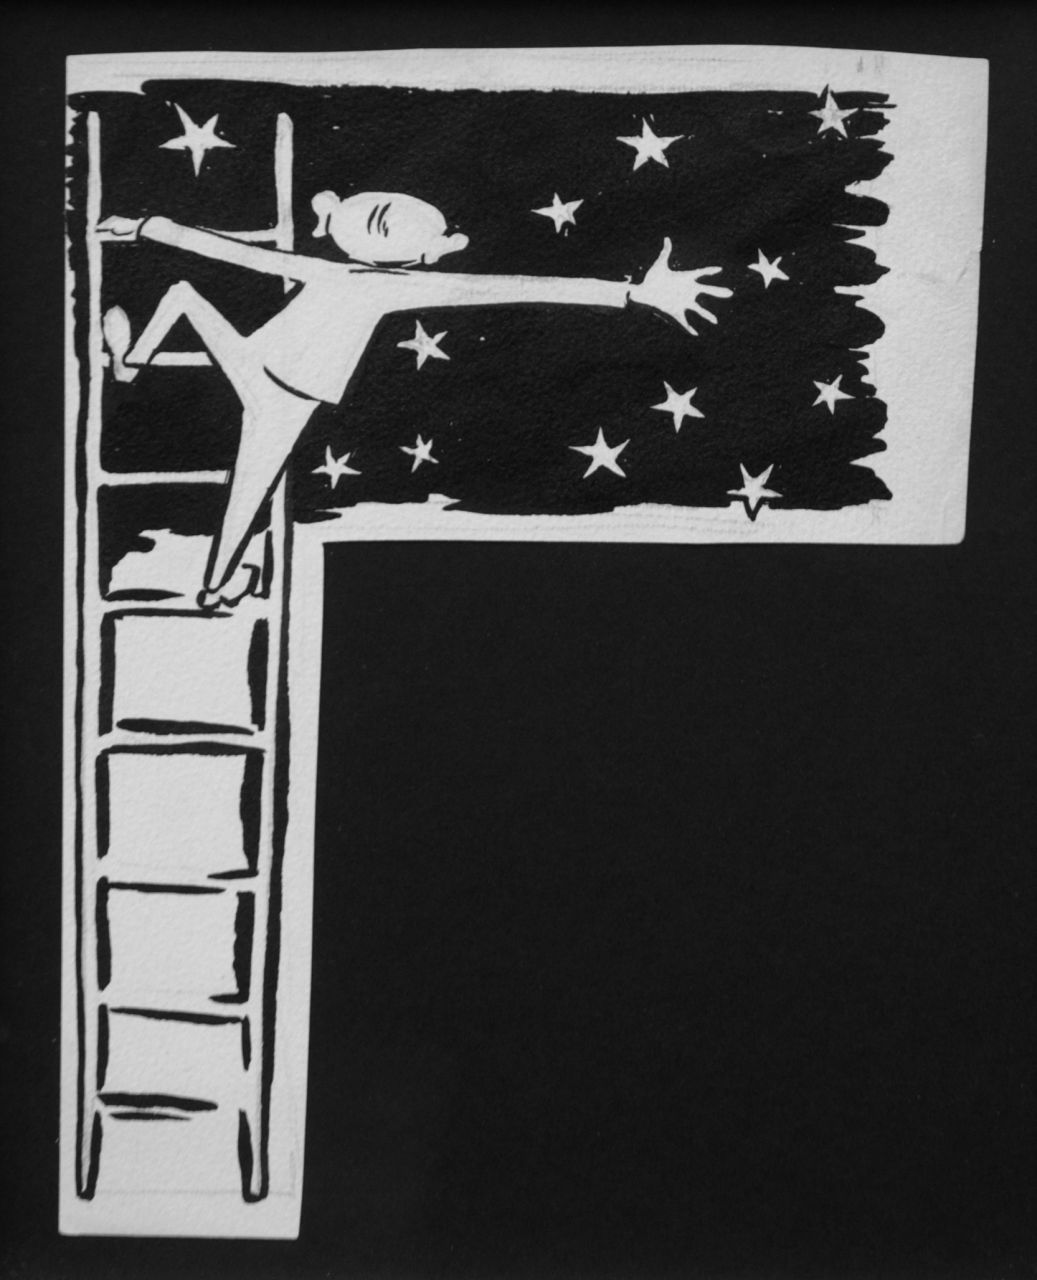 Oranje-Nassau (Prinses Beatrix) B.W.A. van | Beatrix Wilhelmina Armgard van Oranje-Nassau (Prinses Beatrix), Reaching for the stars, Bleistift und Ausziehtusche auf Papier 19,5 x 15,2 cm, executed August 1960